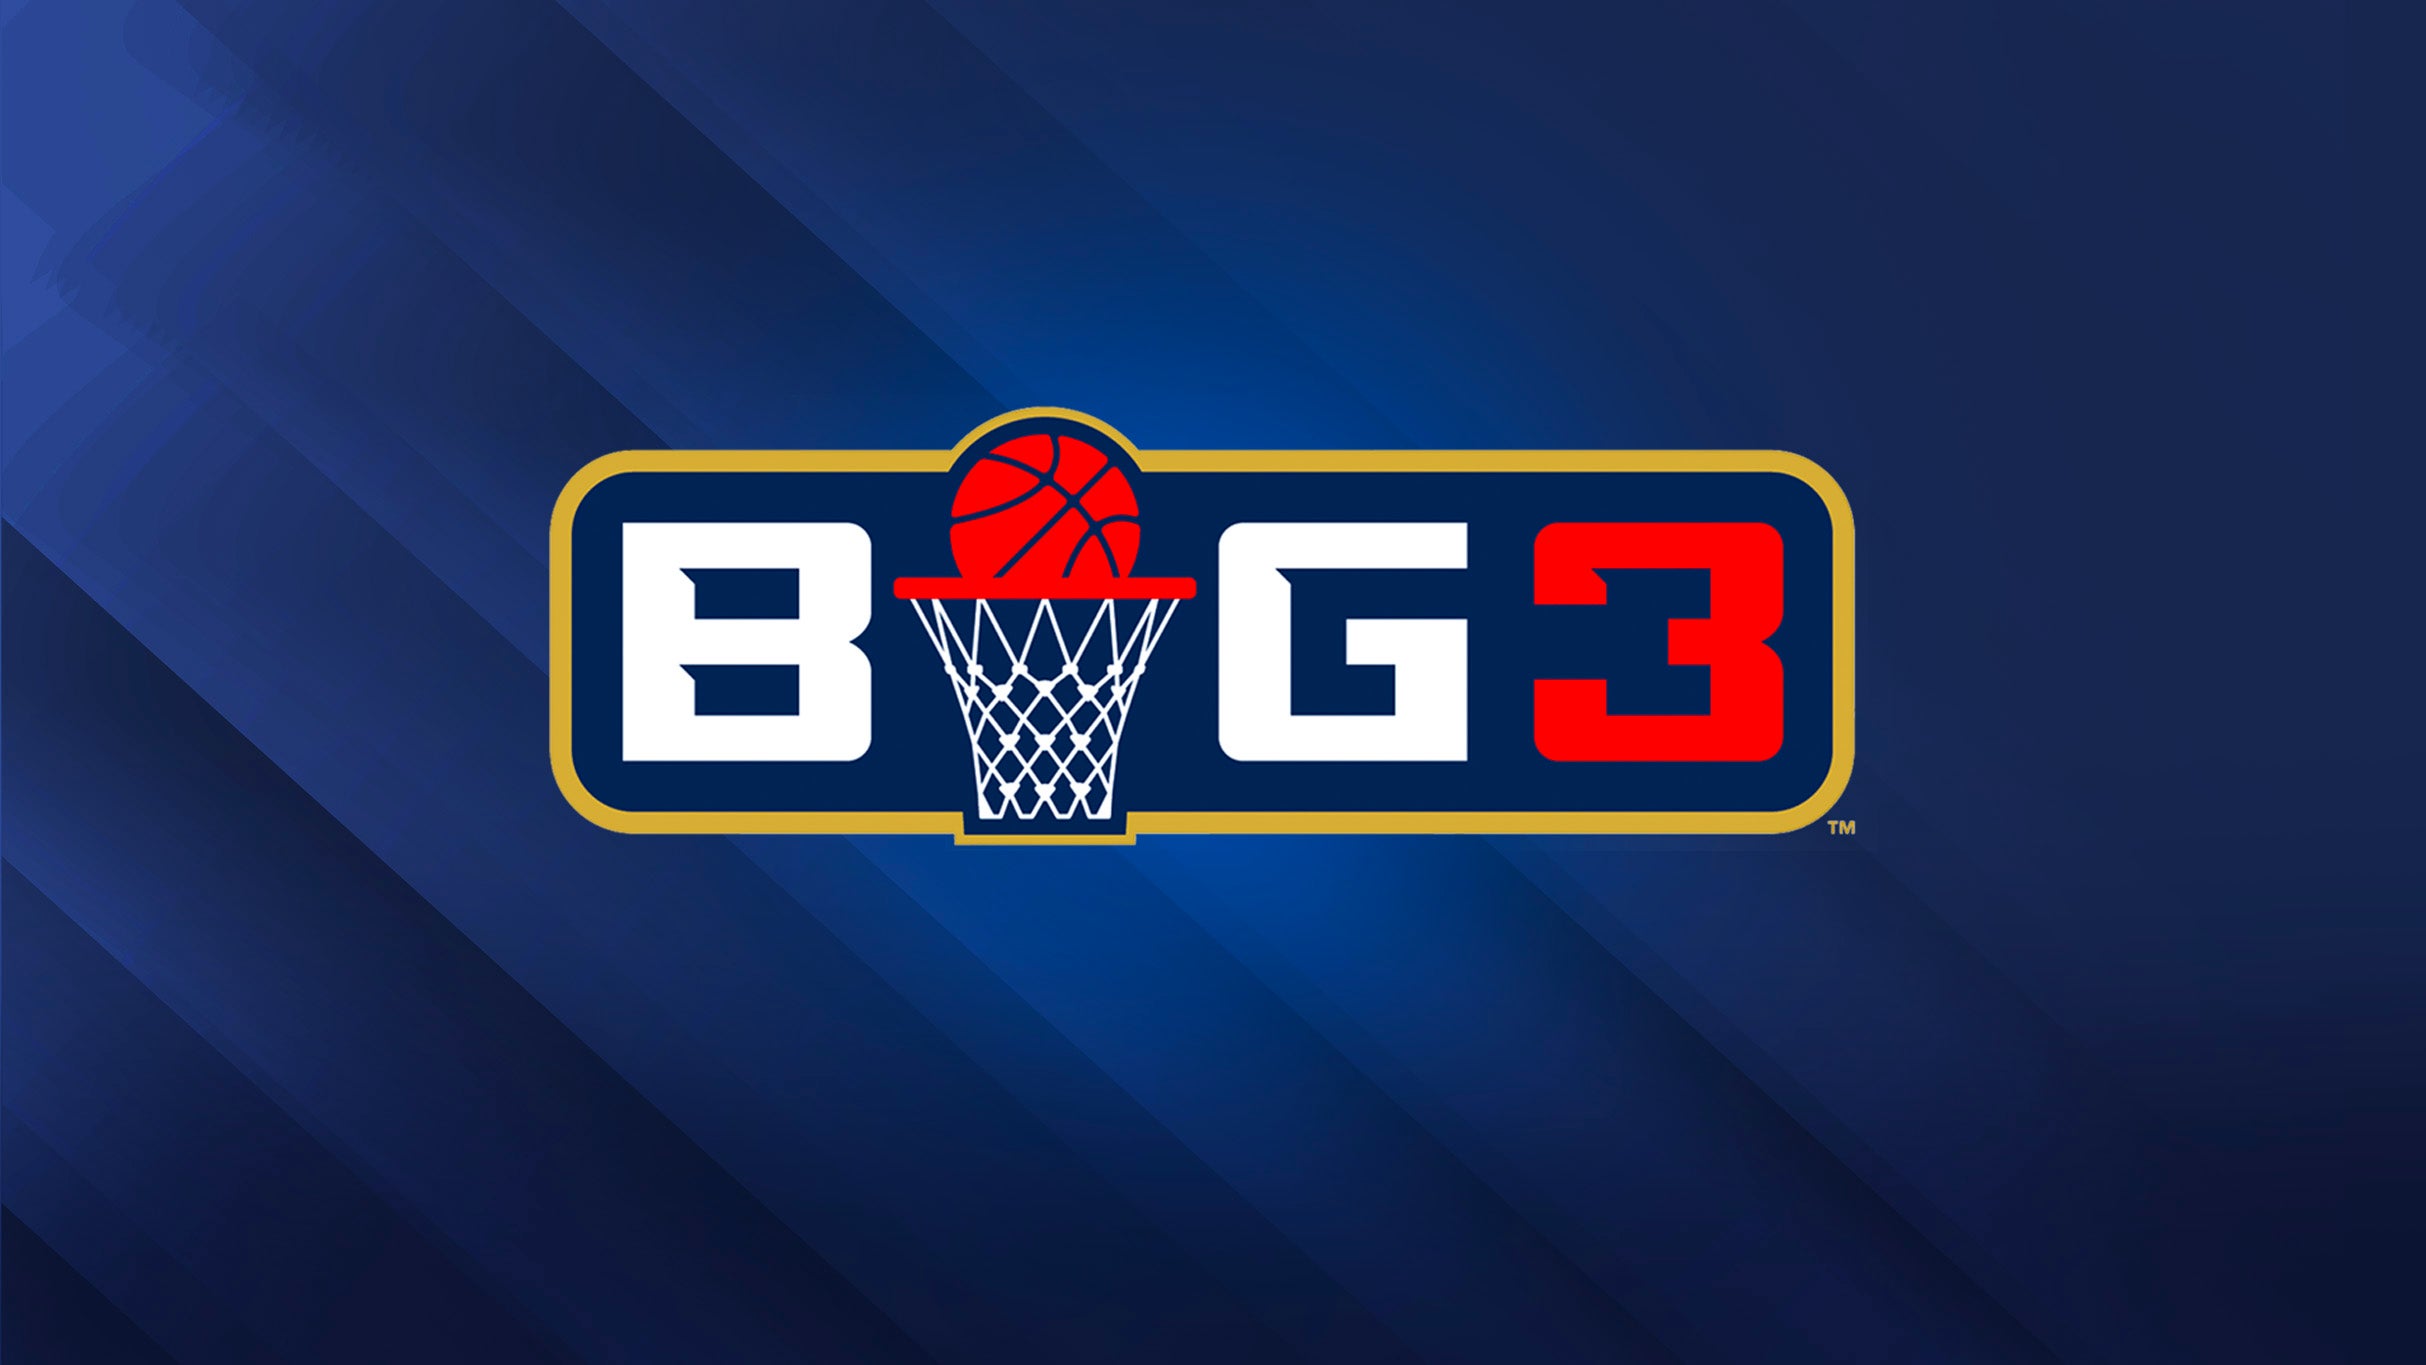 BIG3 - Coming In Hot Baltimore at CFG Bank Arena